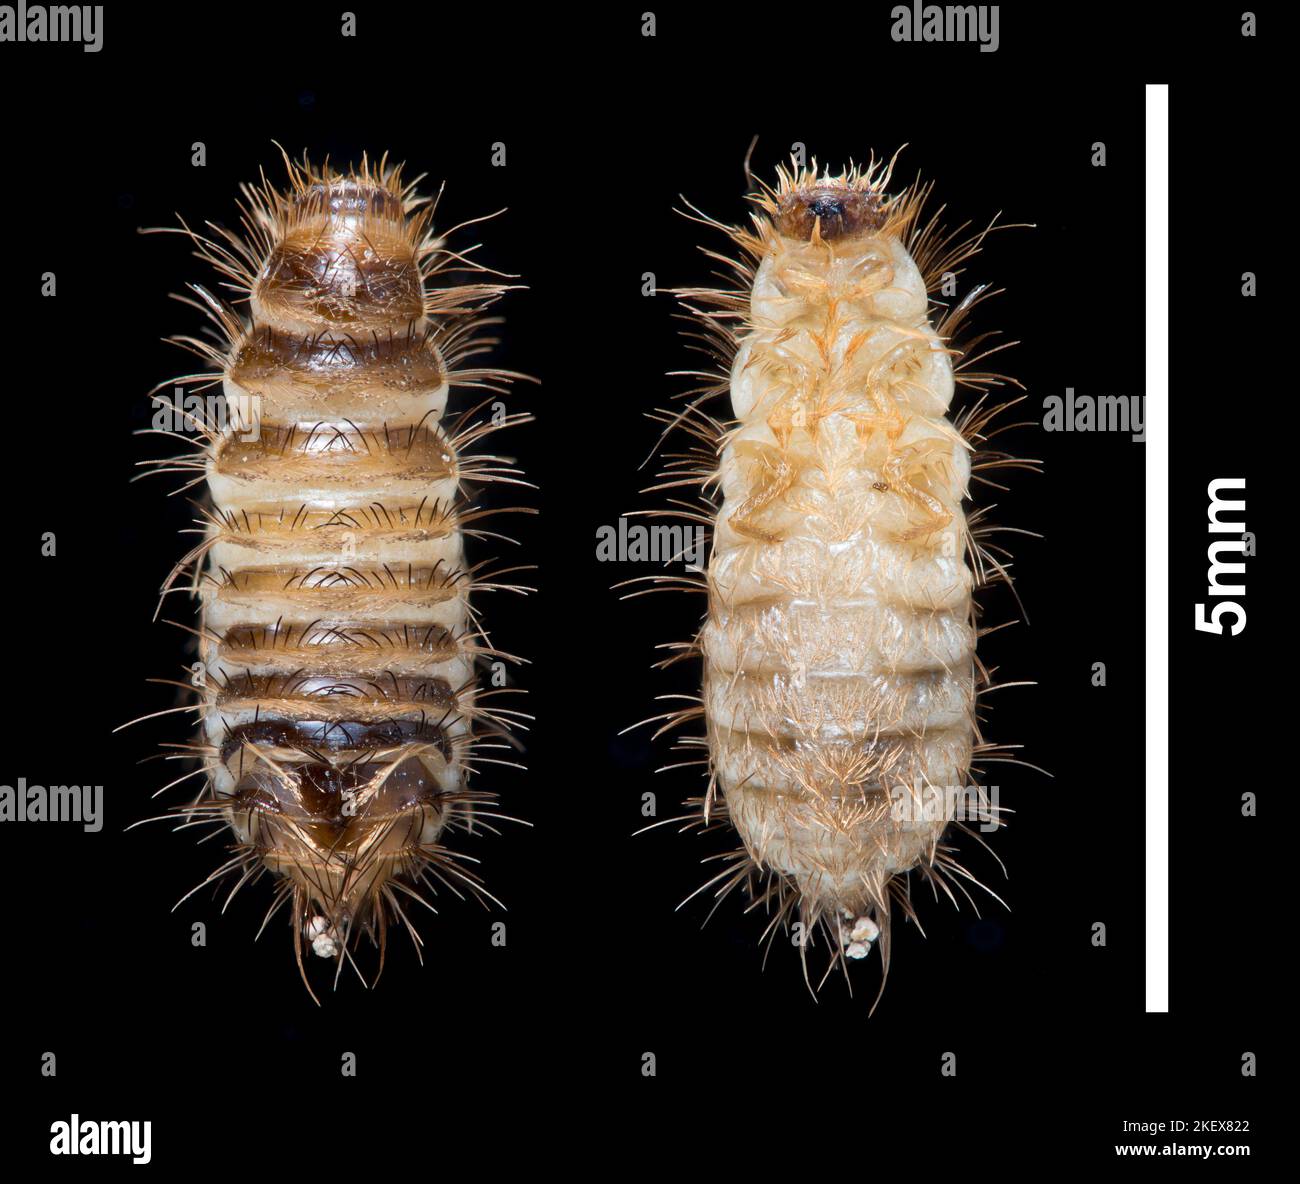 Larva del escarabajo de la alfombra, dorsal y ventral - Fotograma del campo oscuro de Anthrenus fuscus (oso de lana), escala 5mm Foto de stock